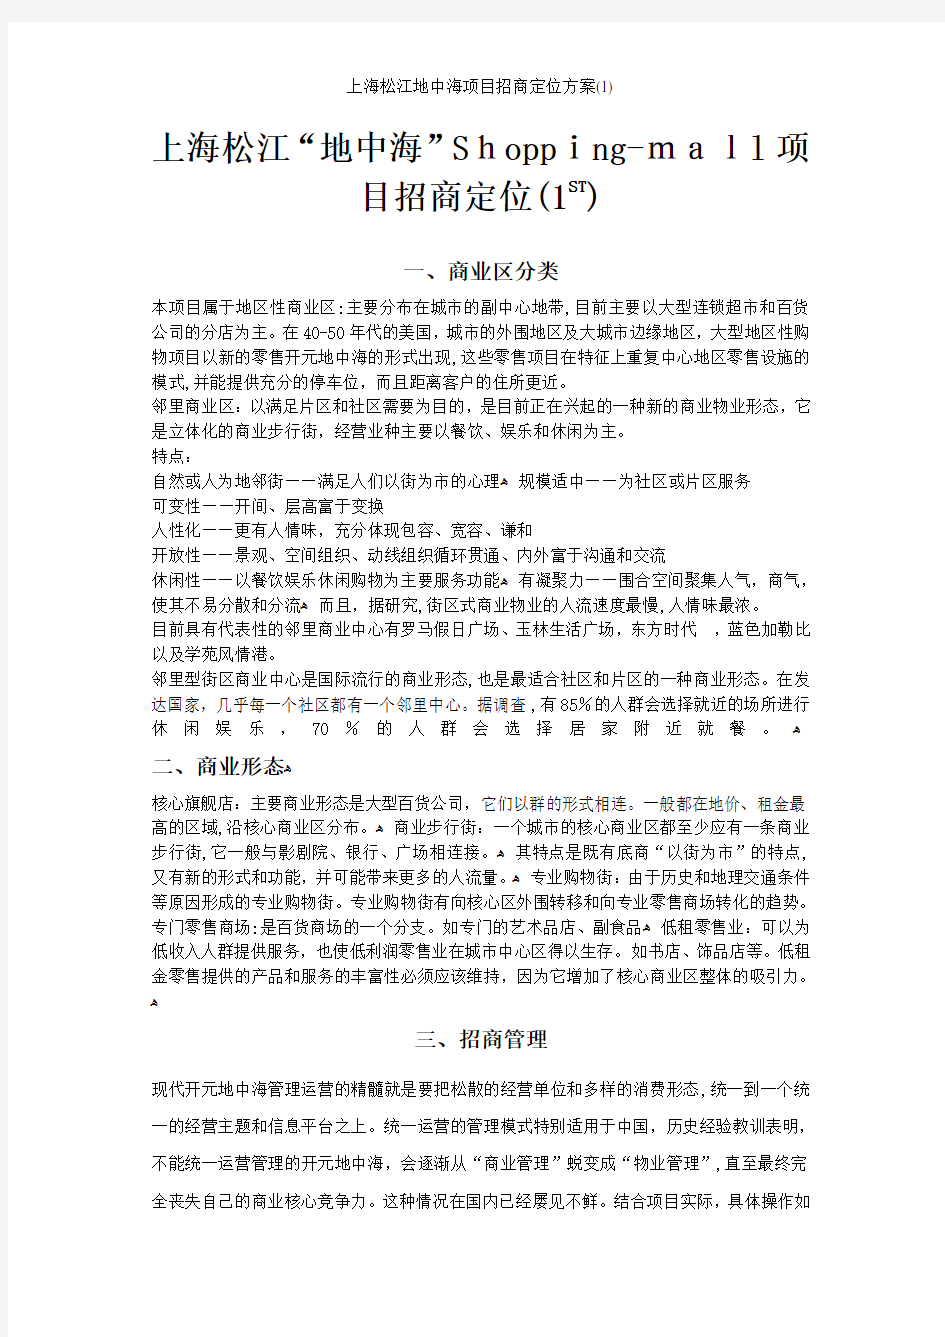 上海松江地中海项目招商定位方案(1)